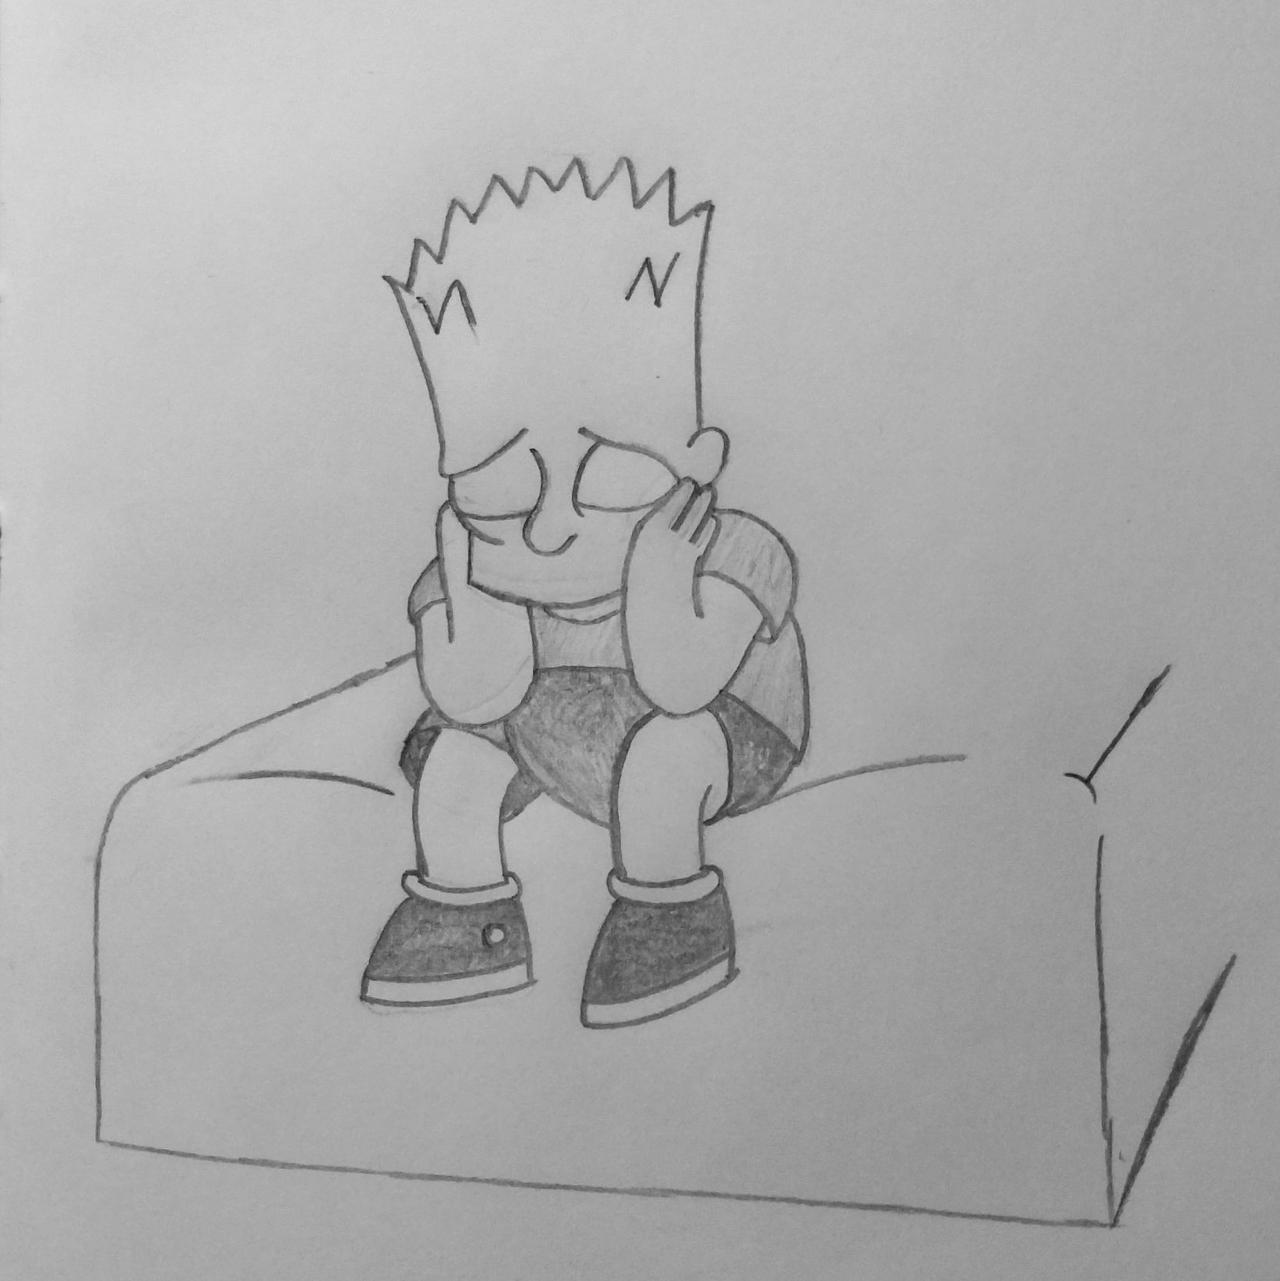 Sad Bart Simpson